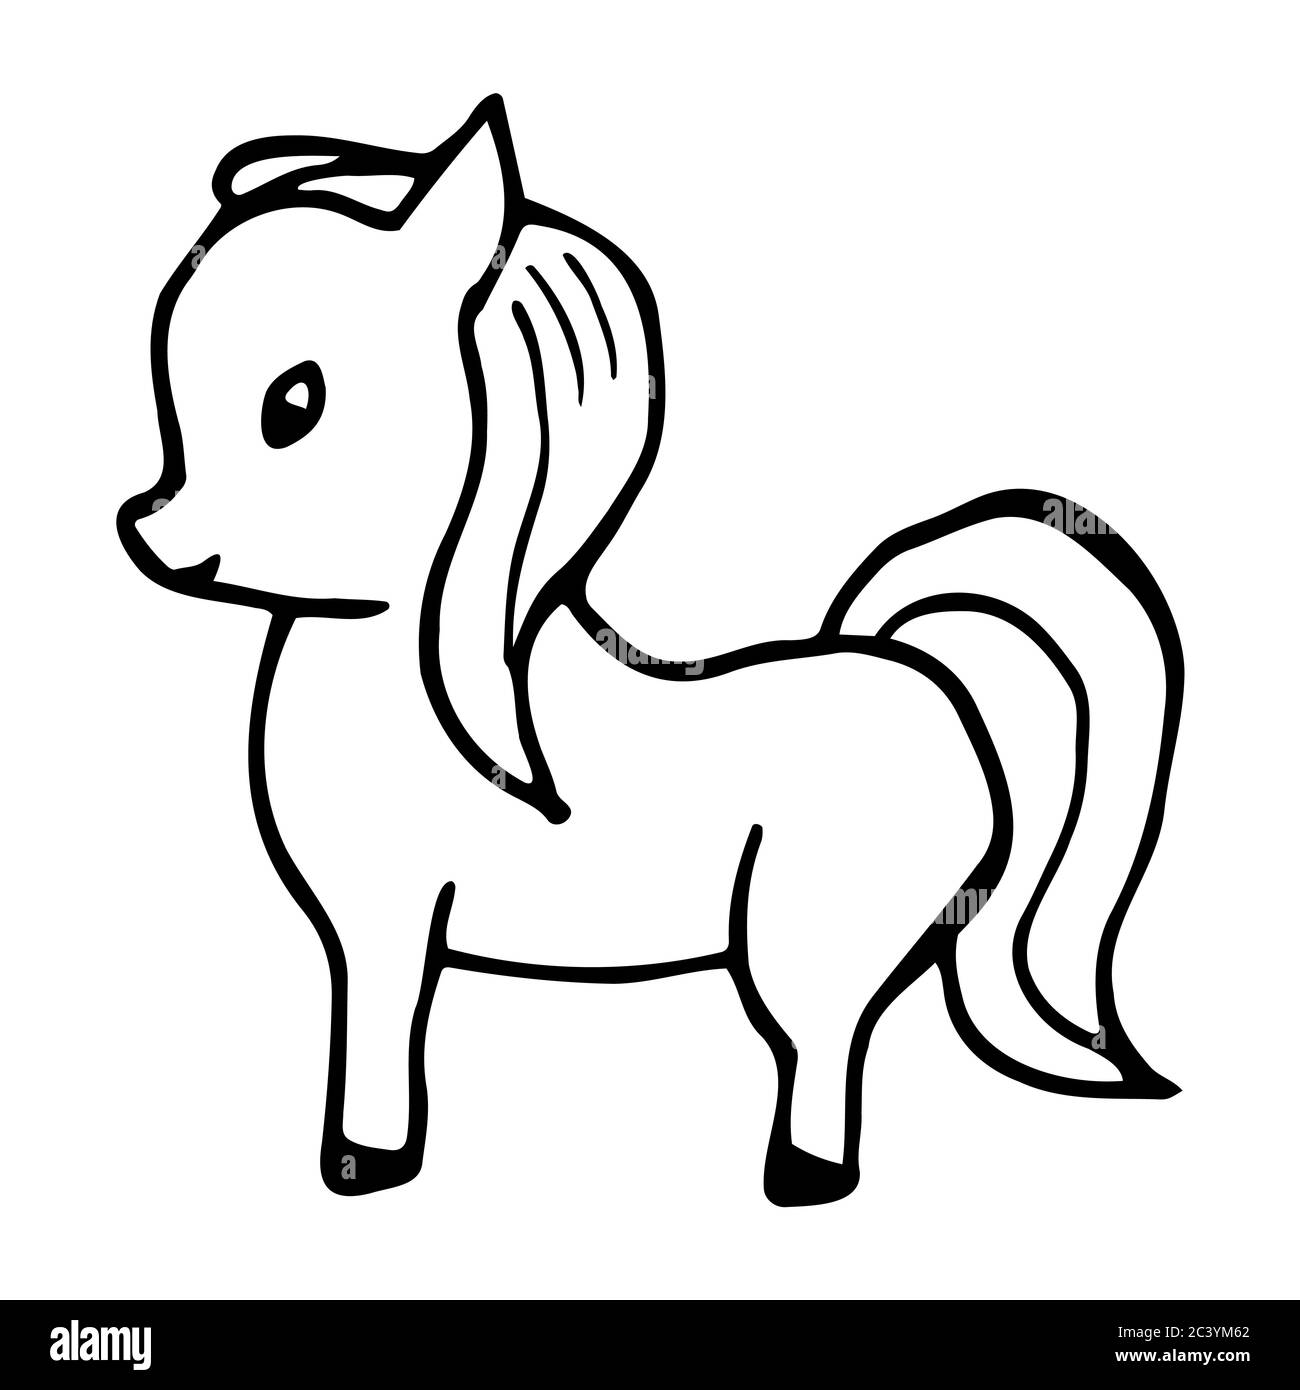 Cavallo tirato a mano (pony). Cavallo cartoon (pony) contorno stile doodle. Immagine vettoriale trasparente isolata su sfondo bianco. Decorazione per schede Illustrazione Vettoriale